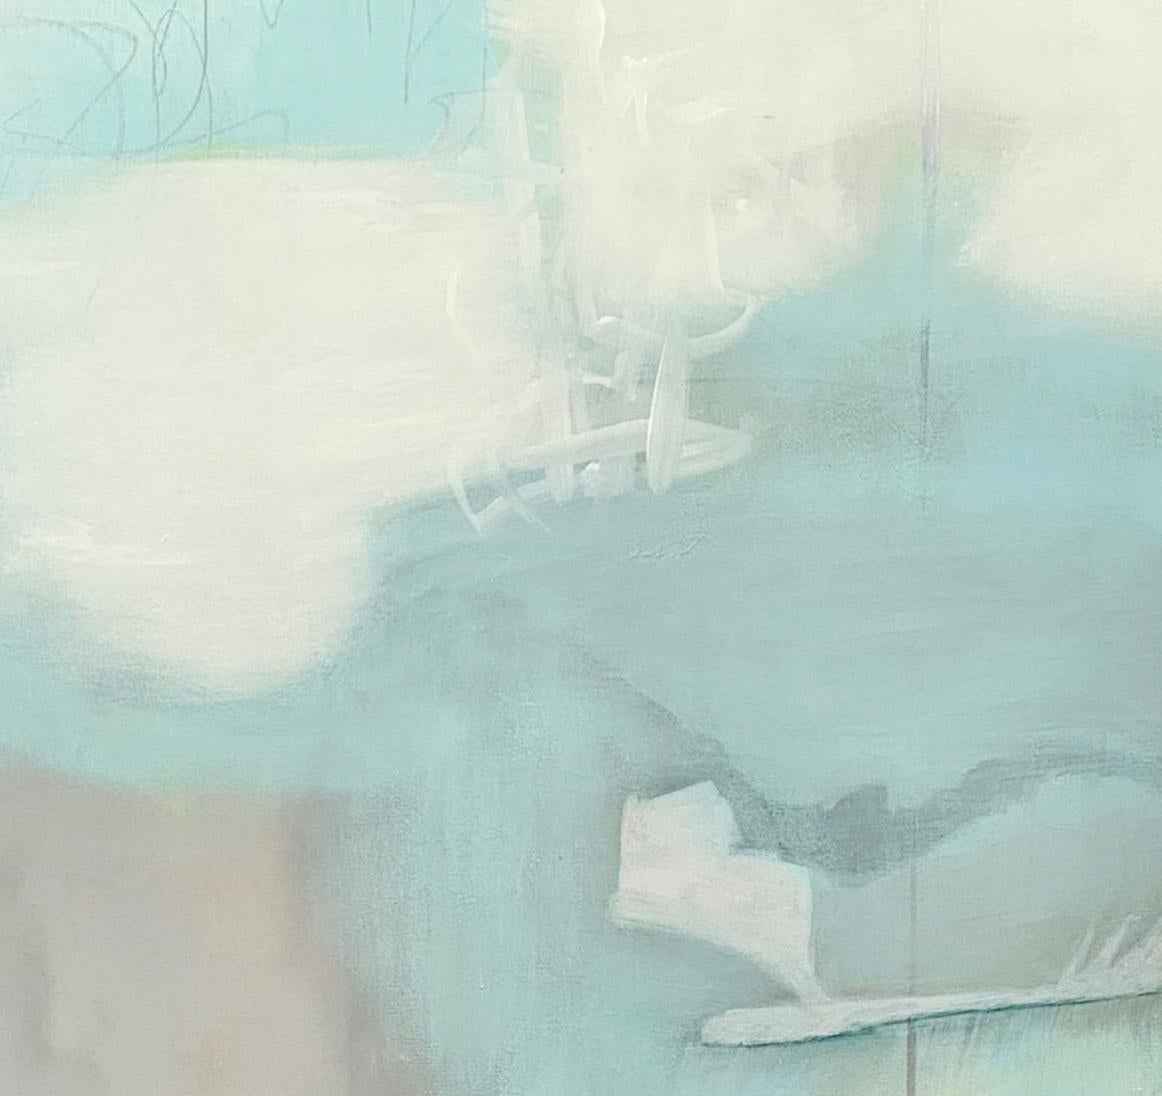 Misty bay 1, paysage abstrait contemporain, bleu, blanc, neutre, aspect asiatique - Painting de Juanita Bellavance 